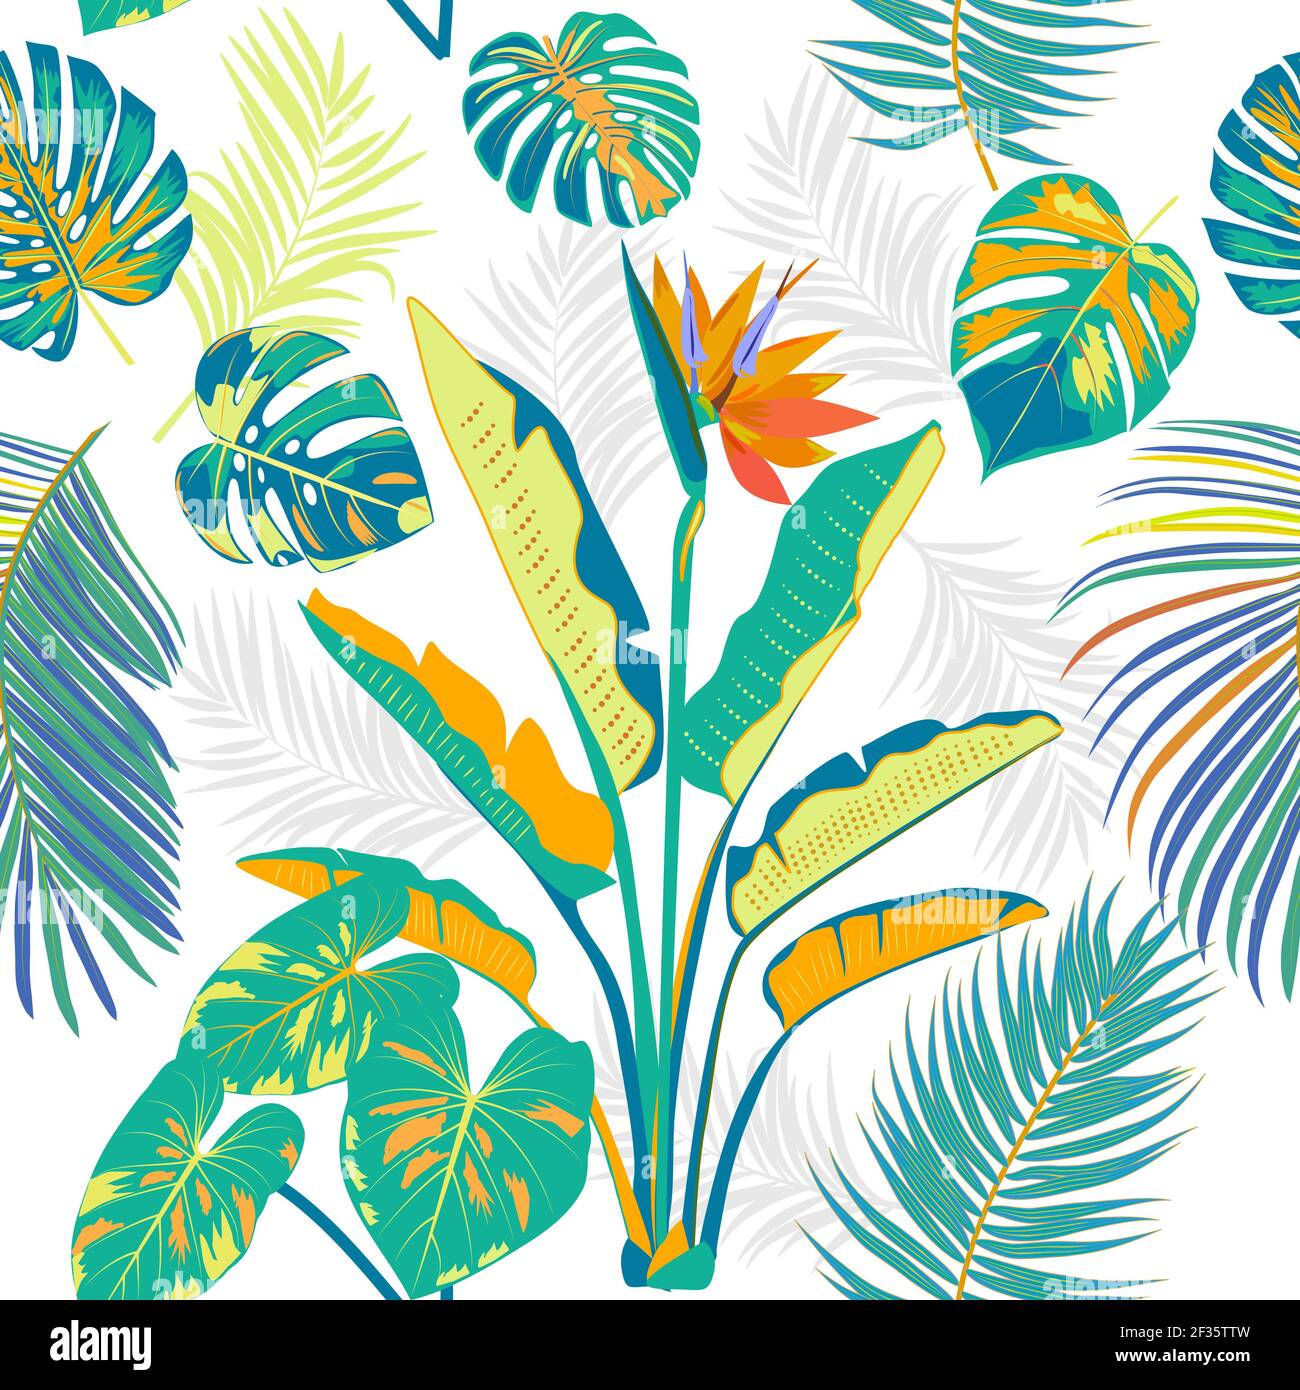 Modello vettoriale tropicale senza giunture con foglie colorate di palme e fiori. Sfondo chiaro botanica, carta da parati giungla. Illustrazione Vettoriale